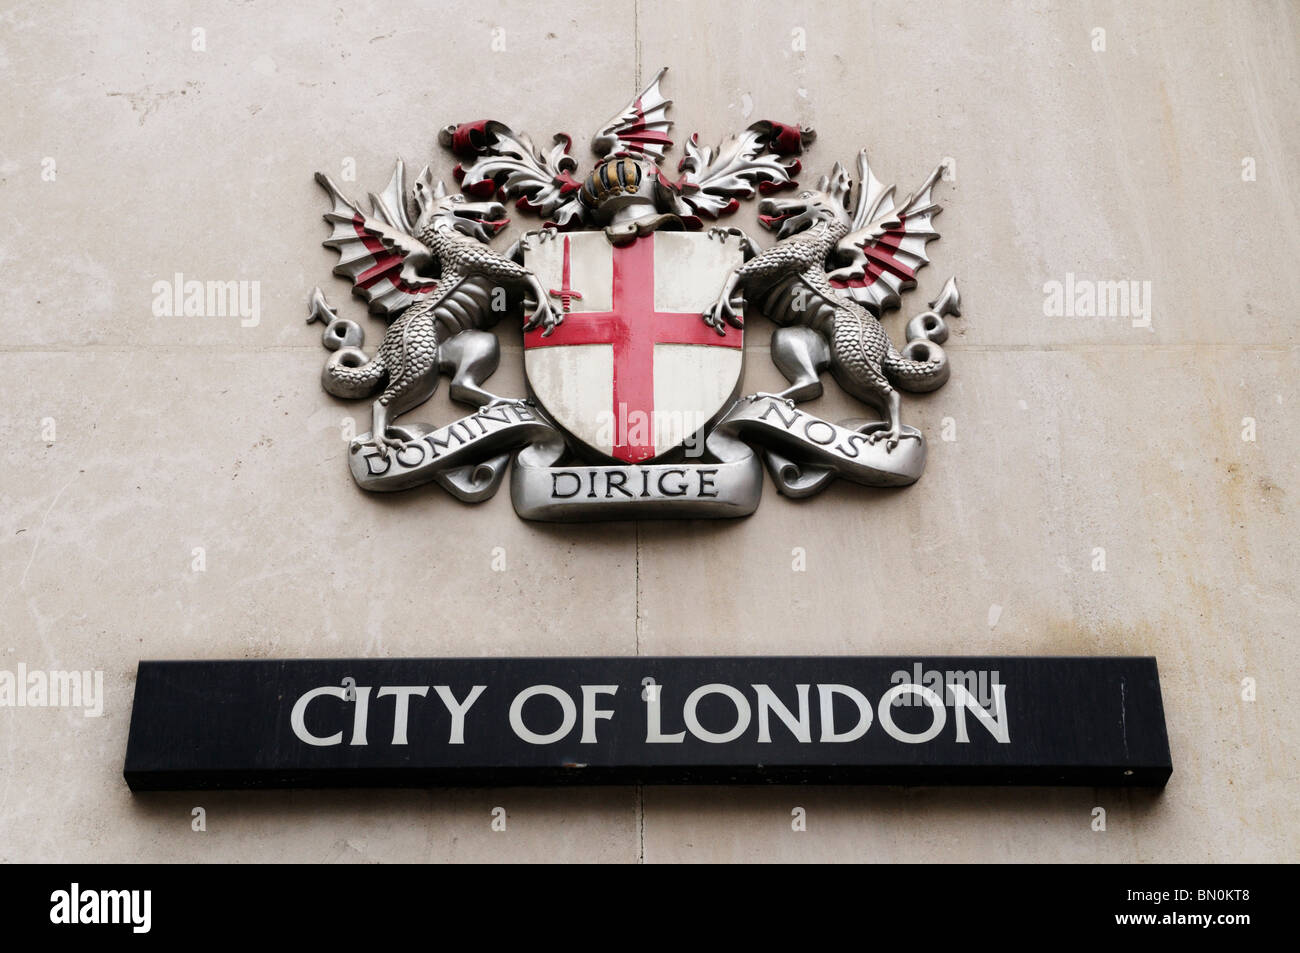 Domine dirige nos ville de London, London, England, UK Banque D'Images